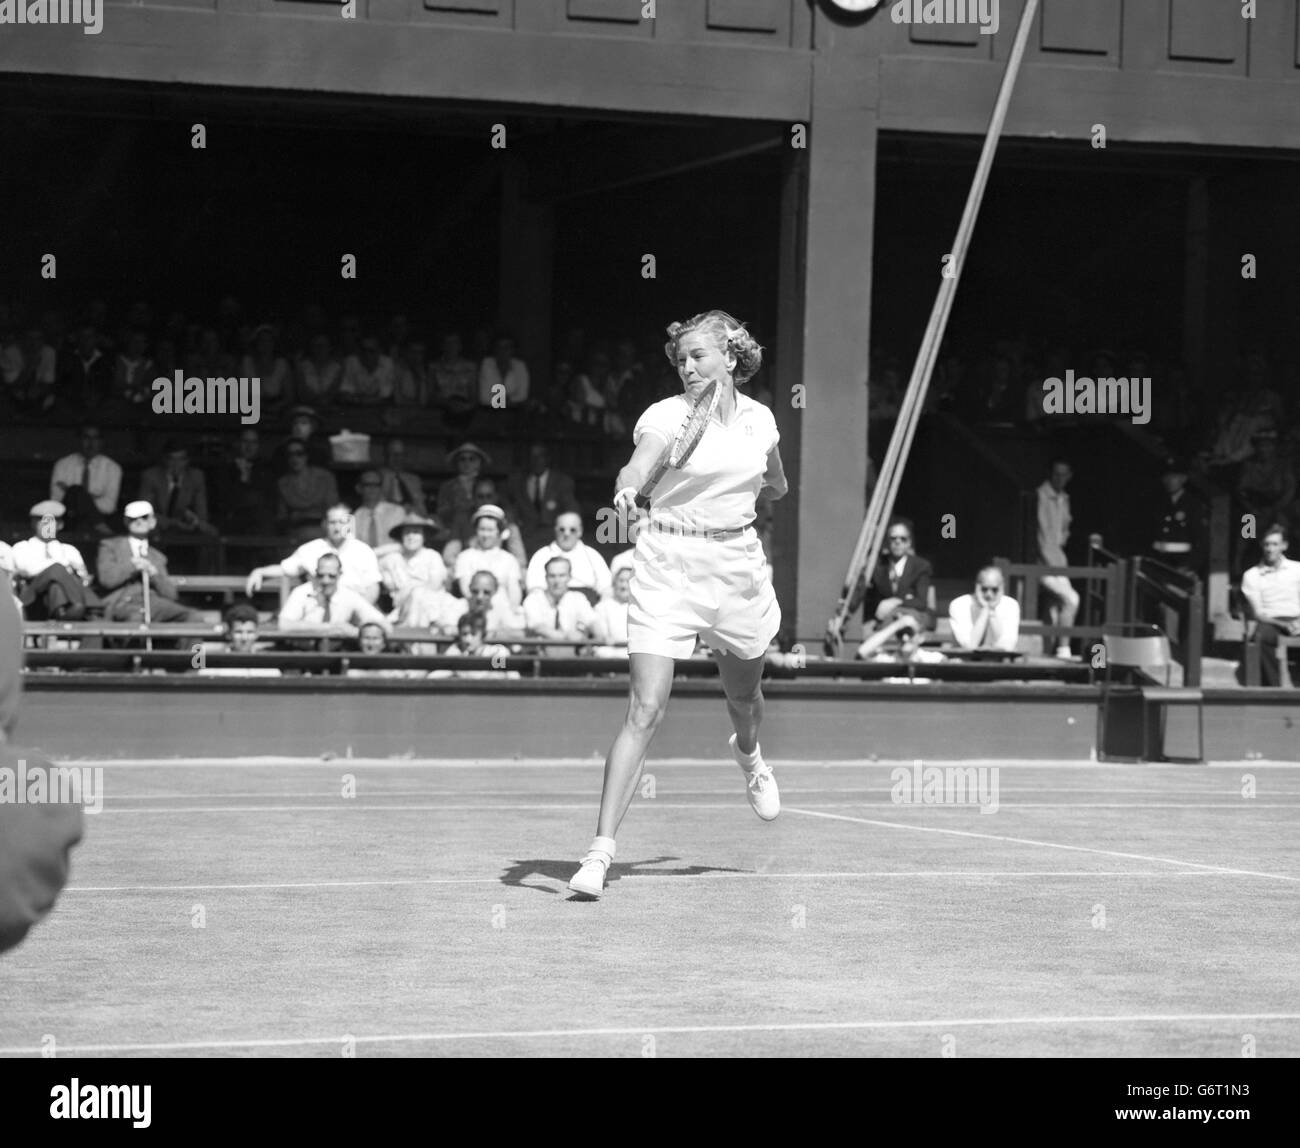 Tennis - Wimbledon - Dameneinzel. Louise Brough in Wimbledon, wo sie Brewer of Bermuda besiegt hat, ist in Aktion. Stockfoto